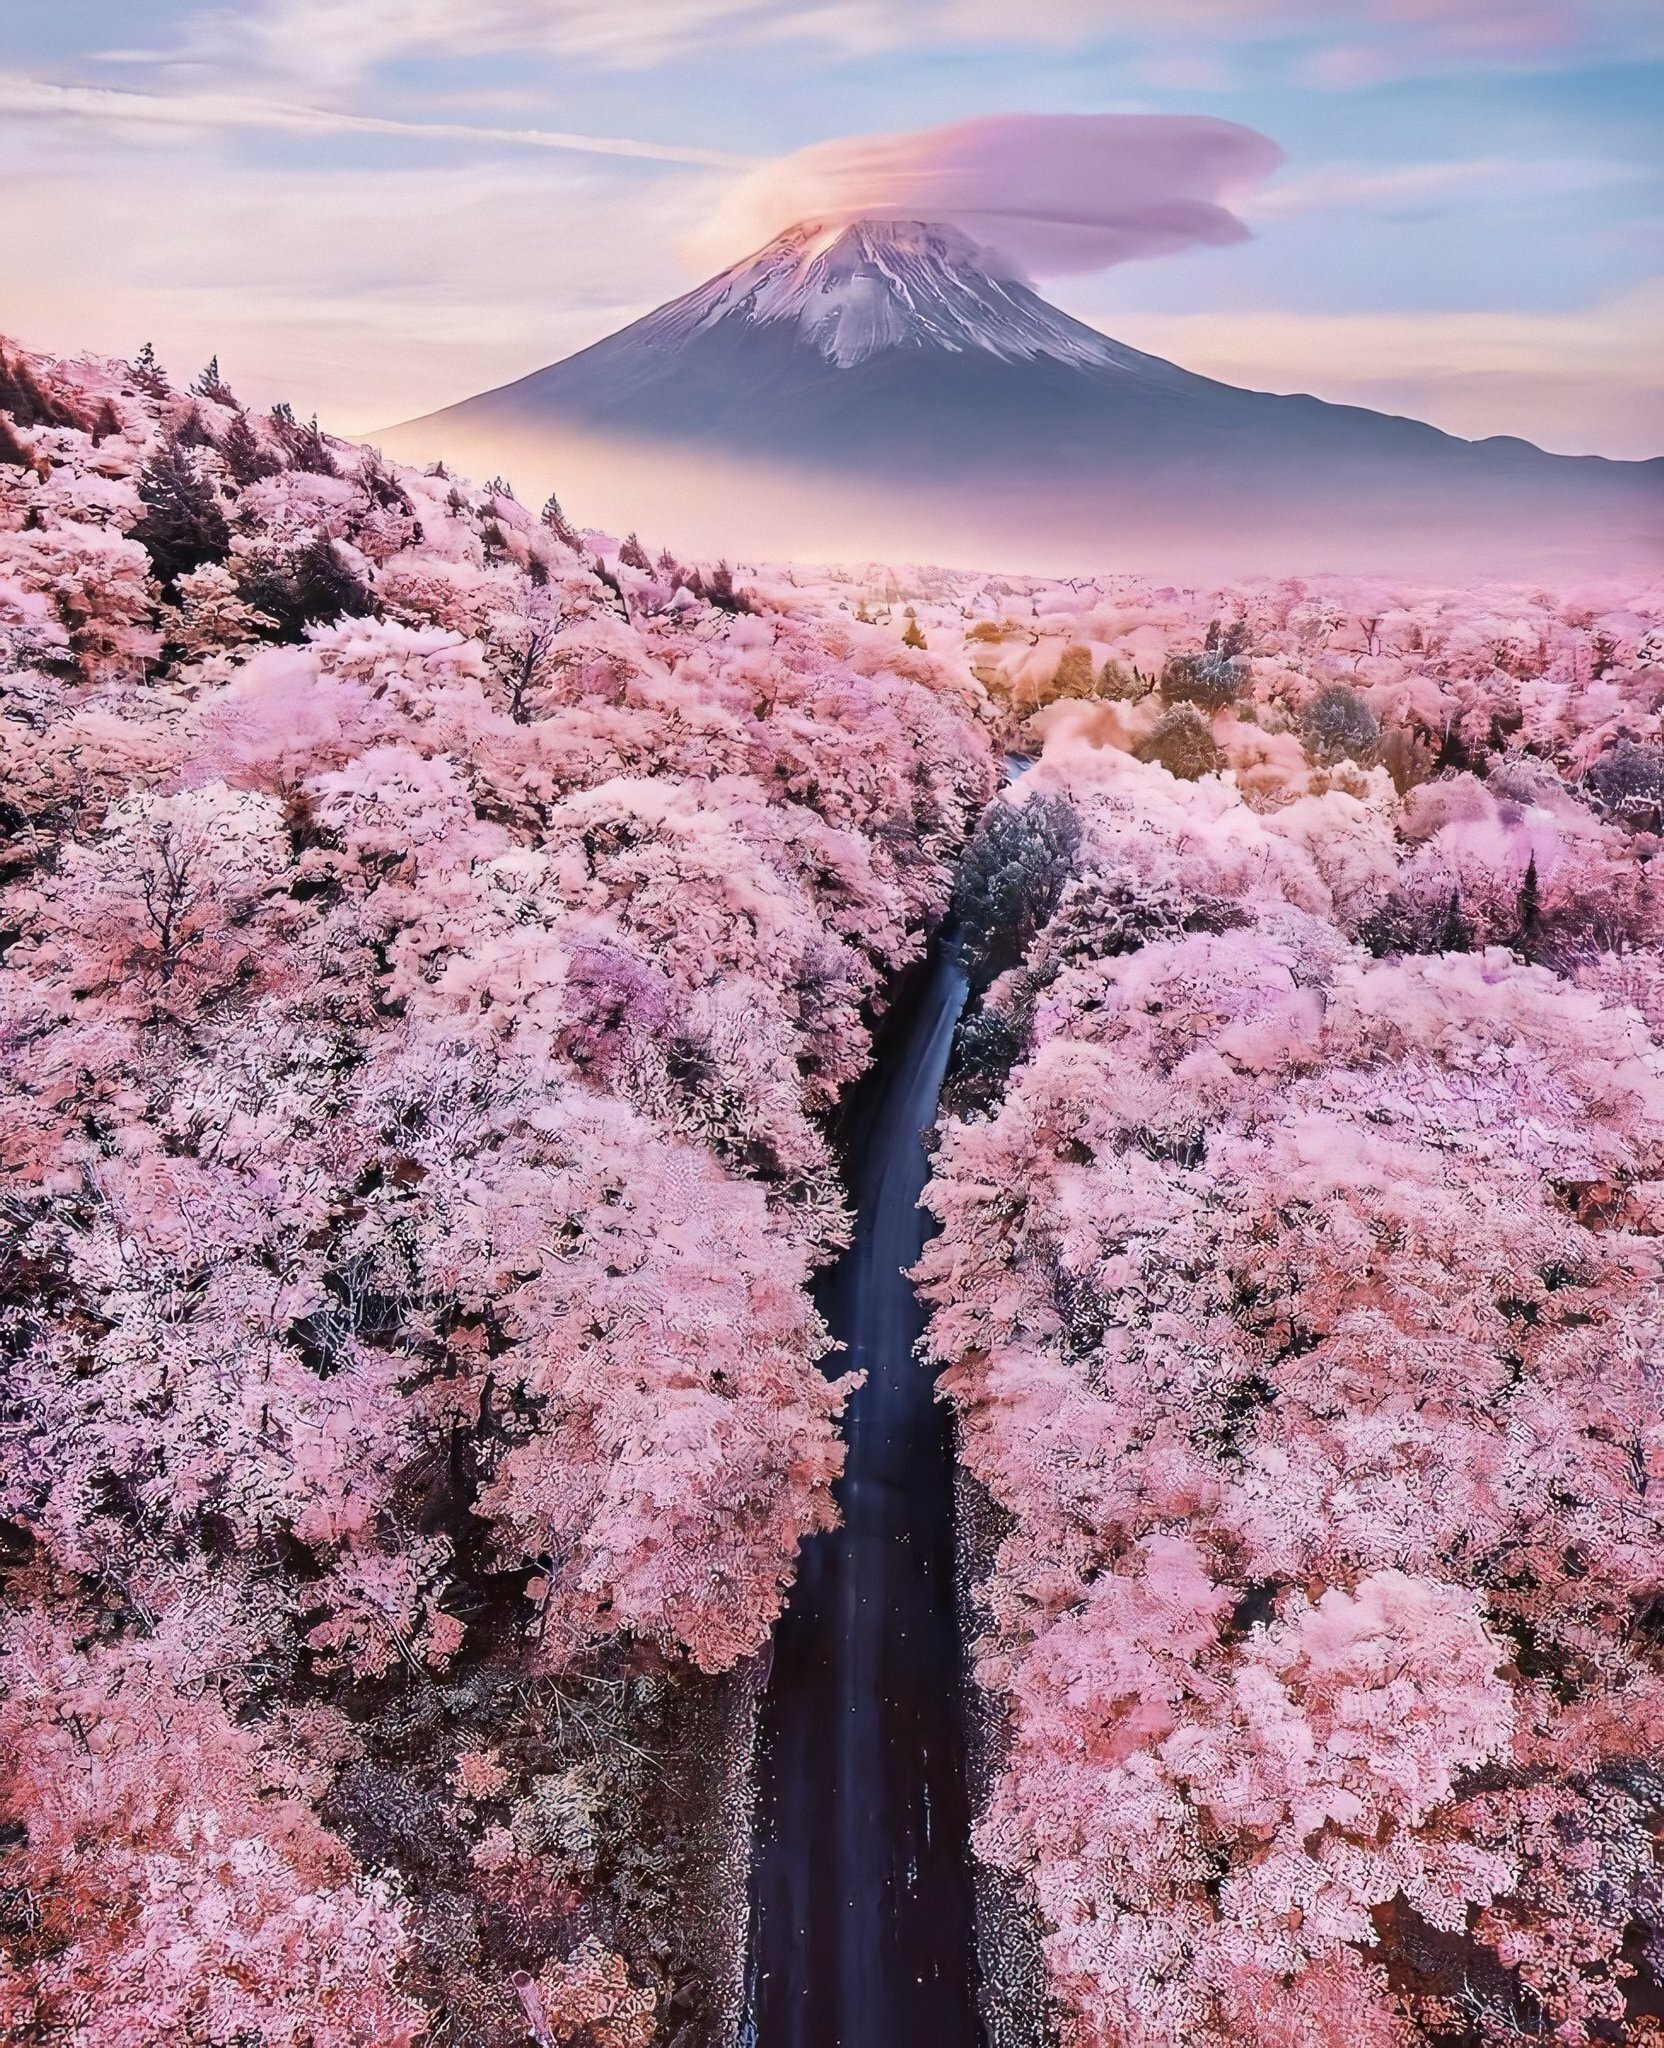 Hình ảnh Nhật Bản đẹp ngất ngây khiến ai cũng muốn ngắm